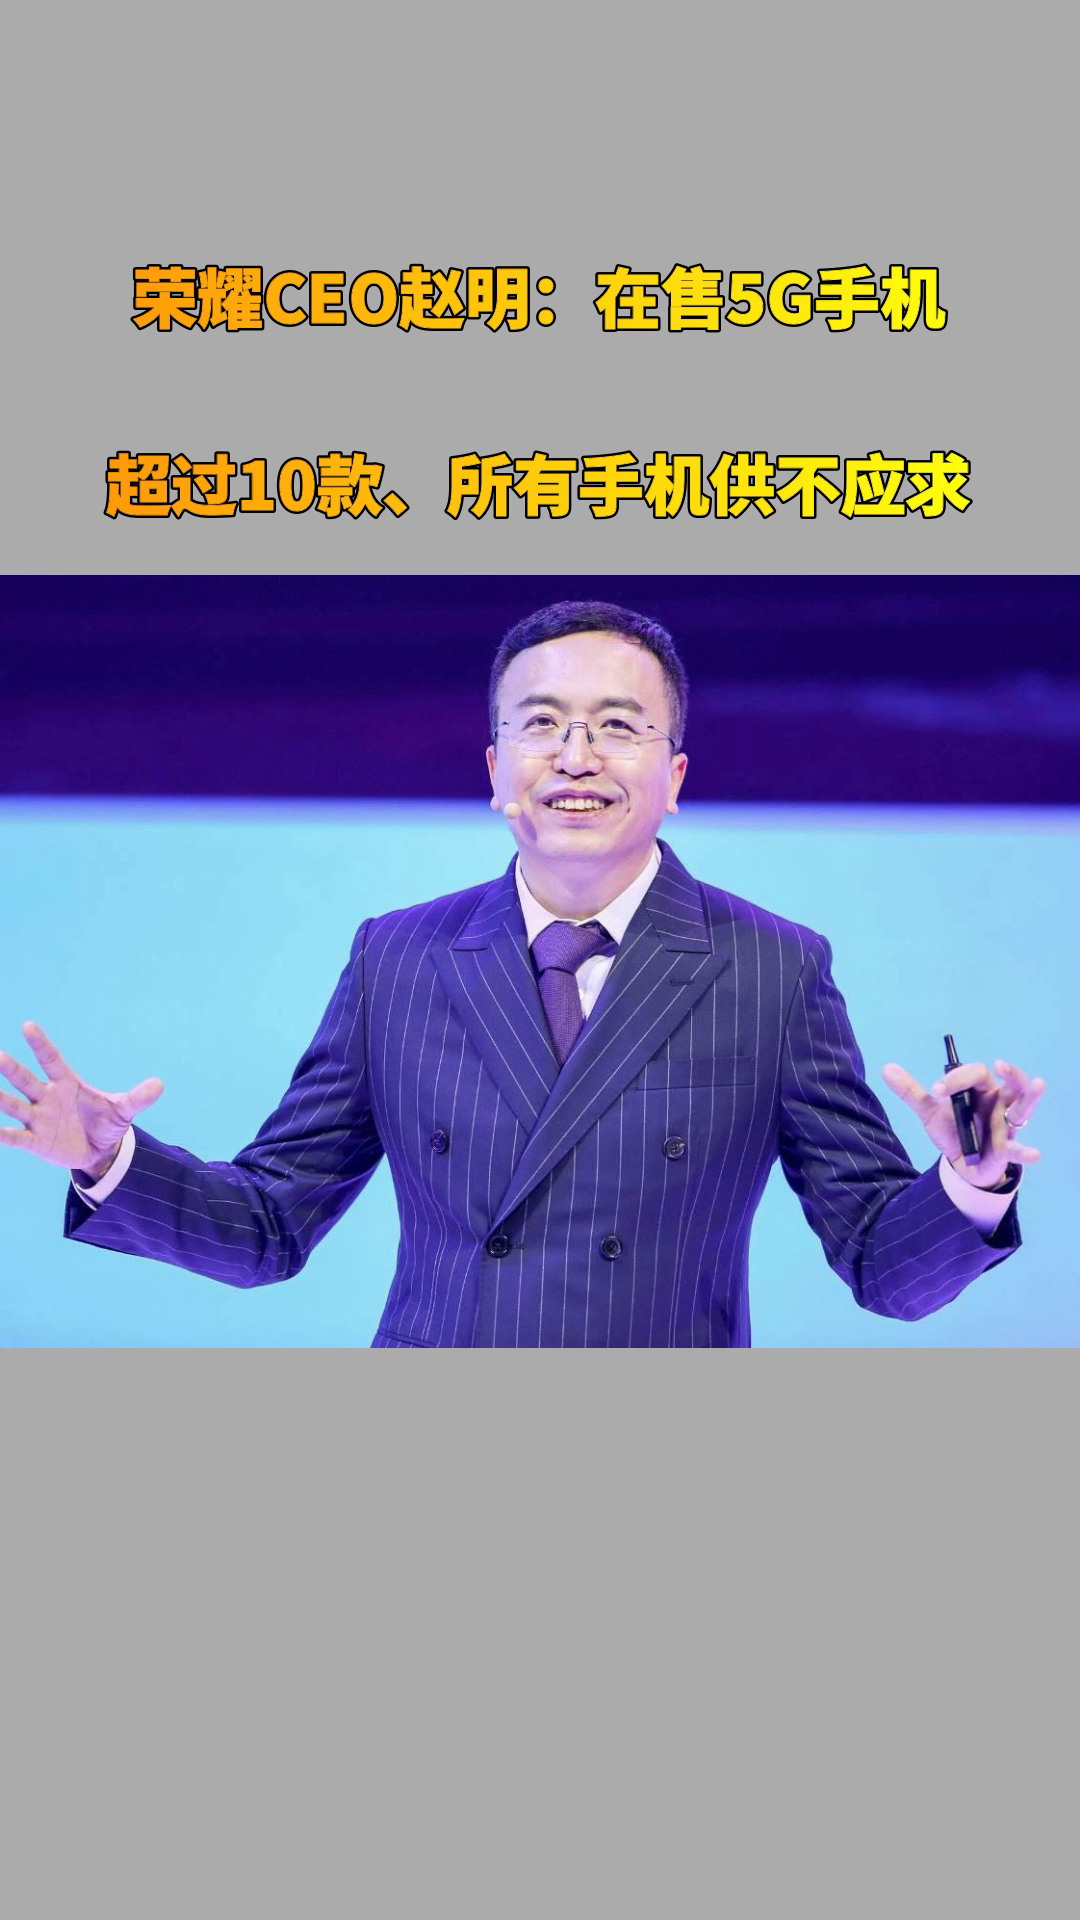 荣耀ceo赵明:在售5g手机超过10款,所有手机供不应求